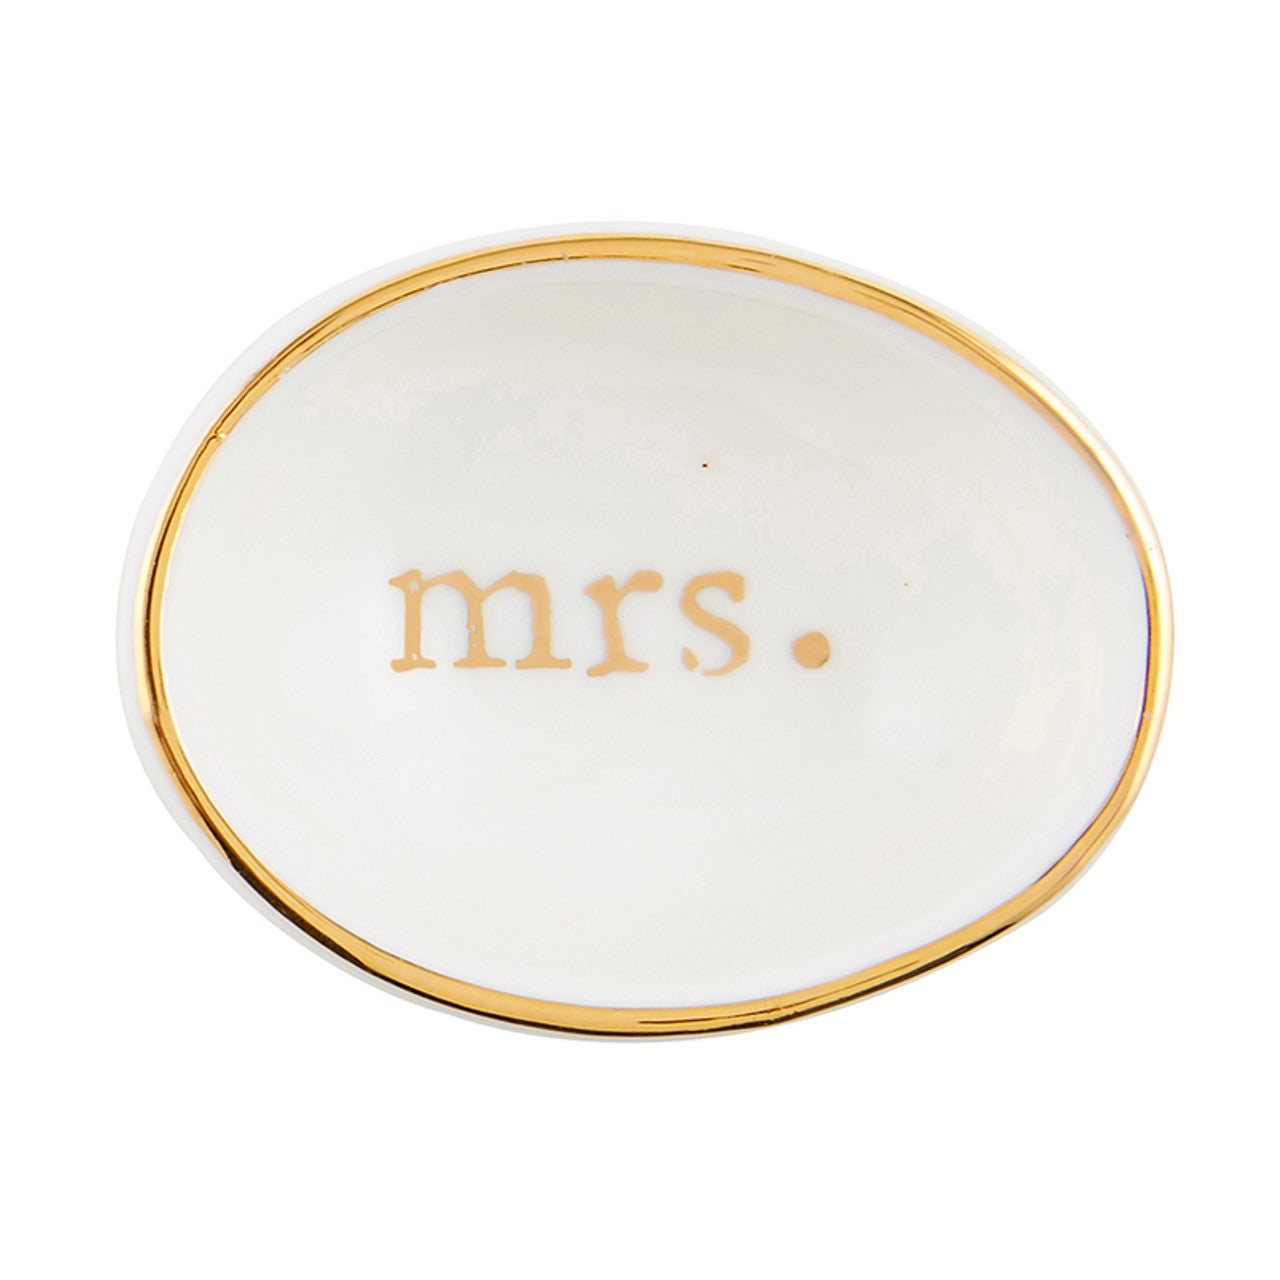 Ring Dish - Mrs.